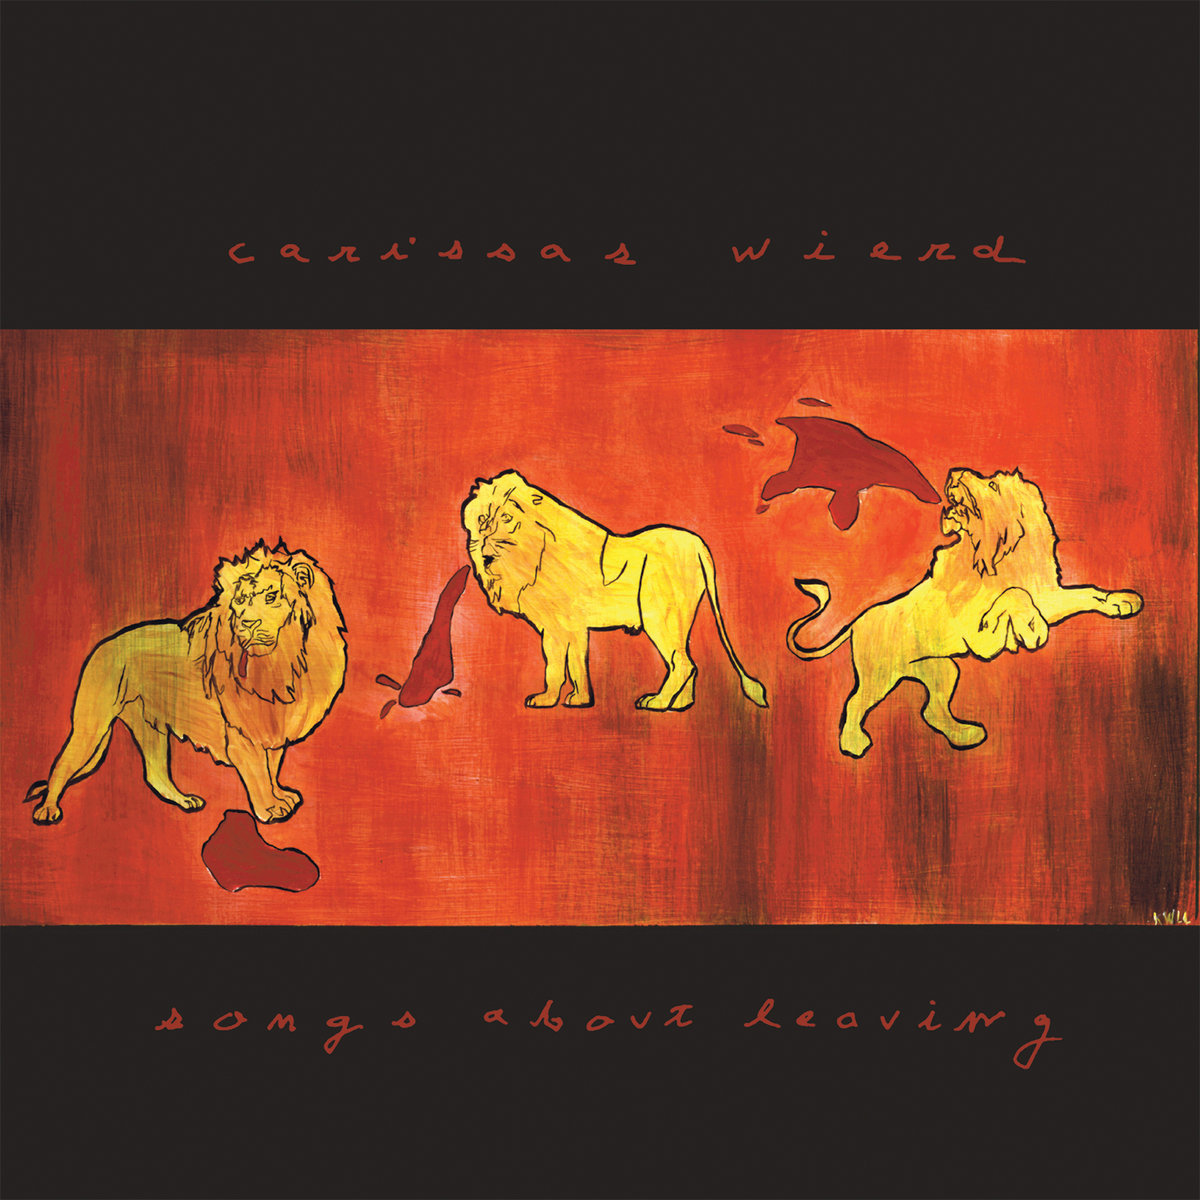 Carissa’s Wierd – Songs About Leaving